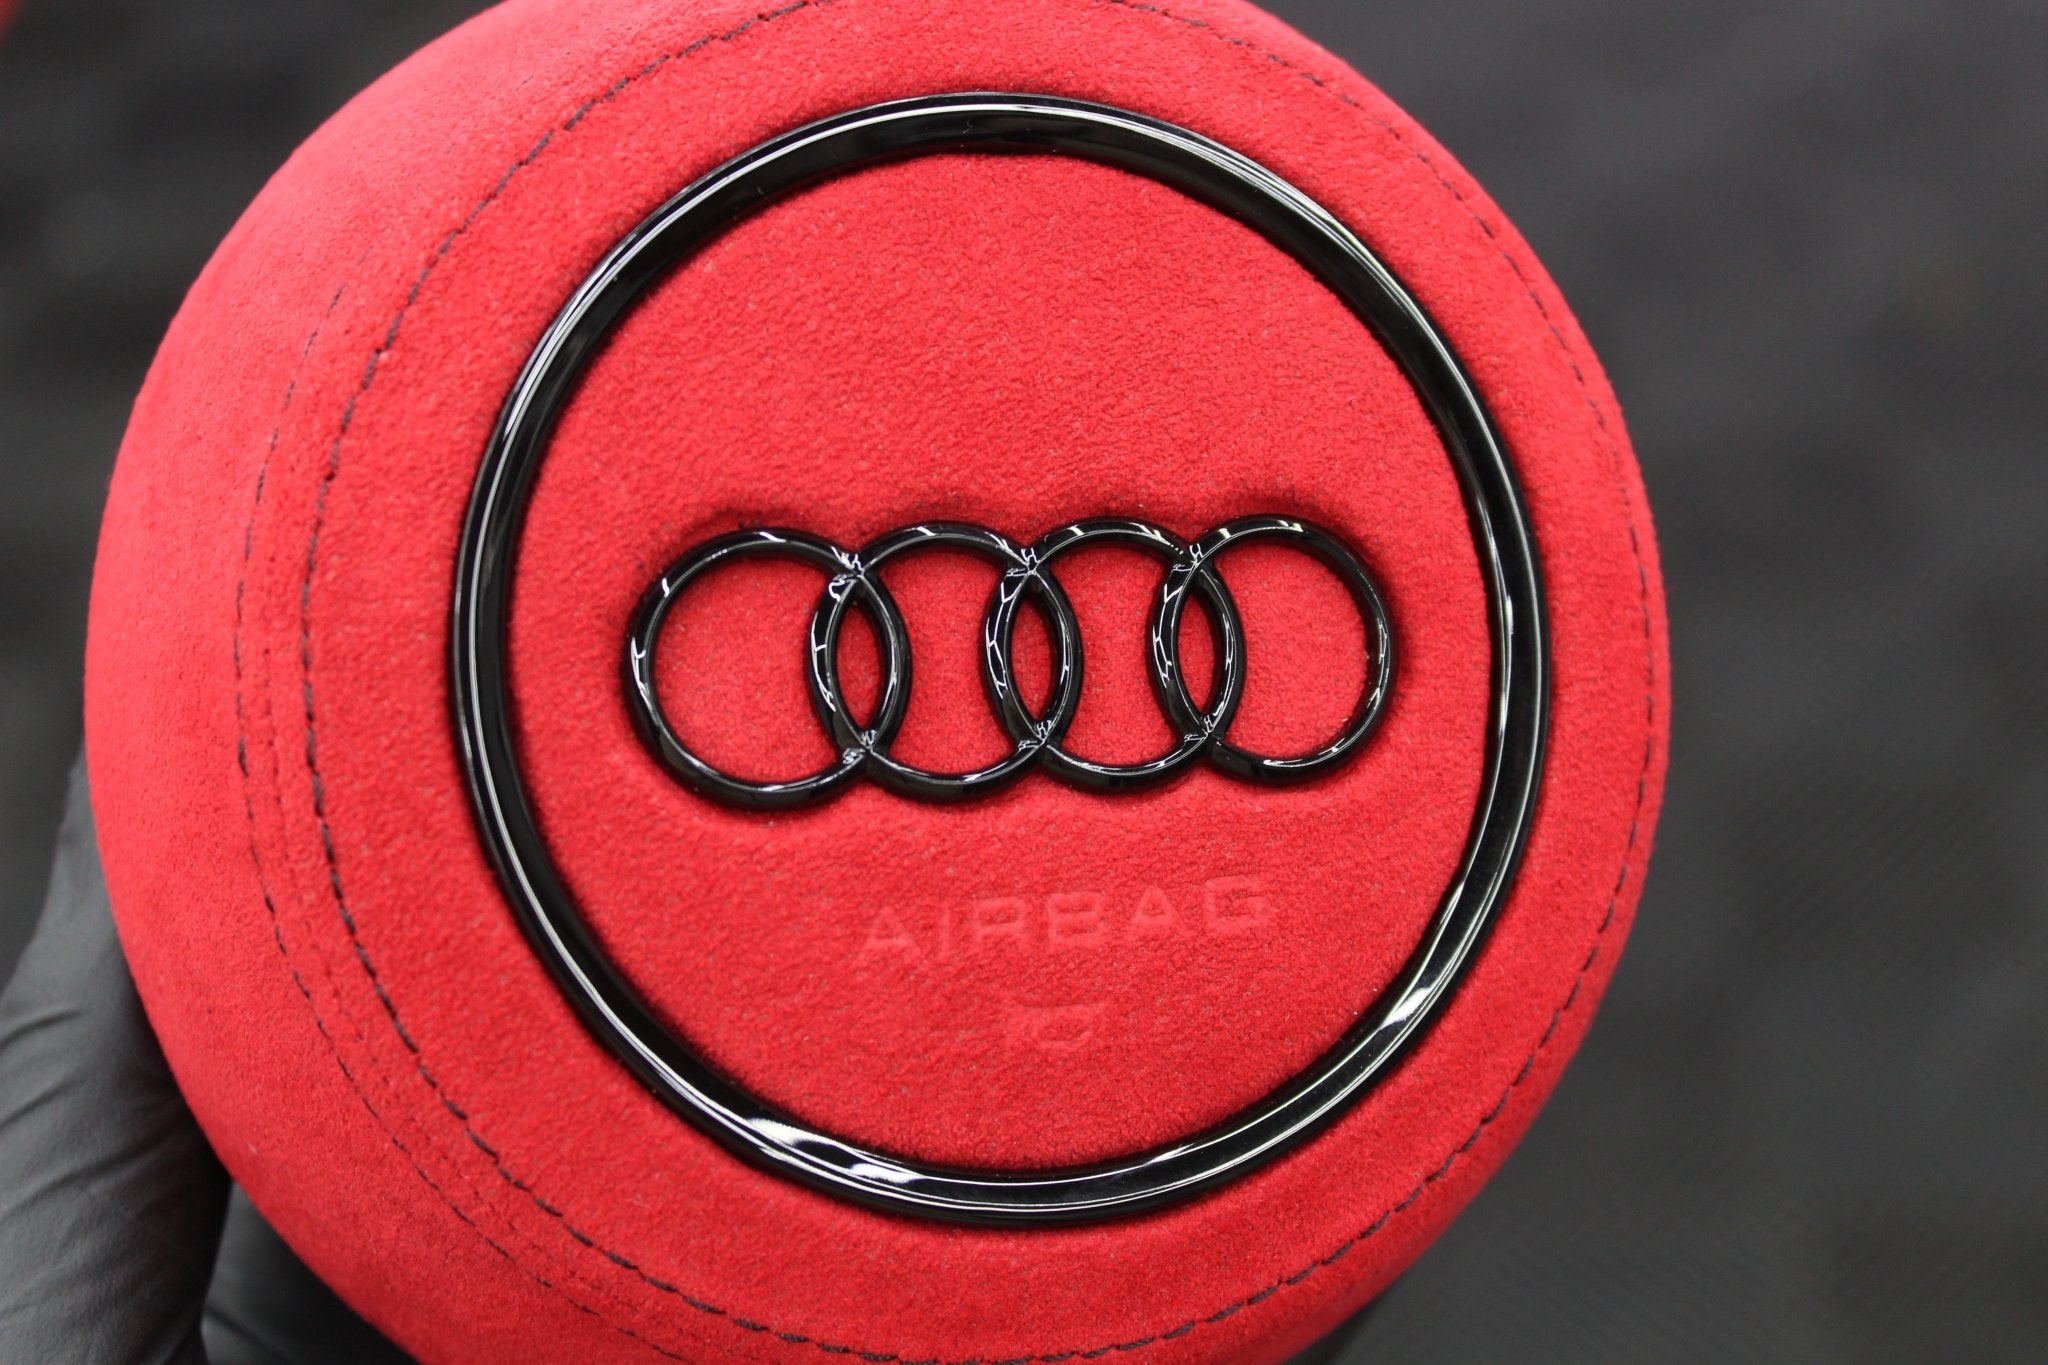 Audi alcantara airbag cover